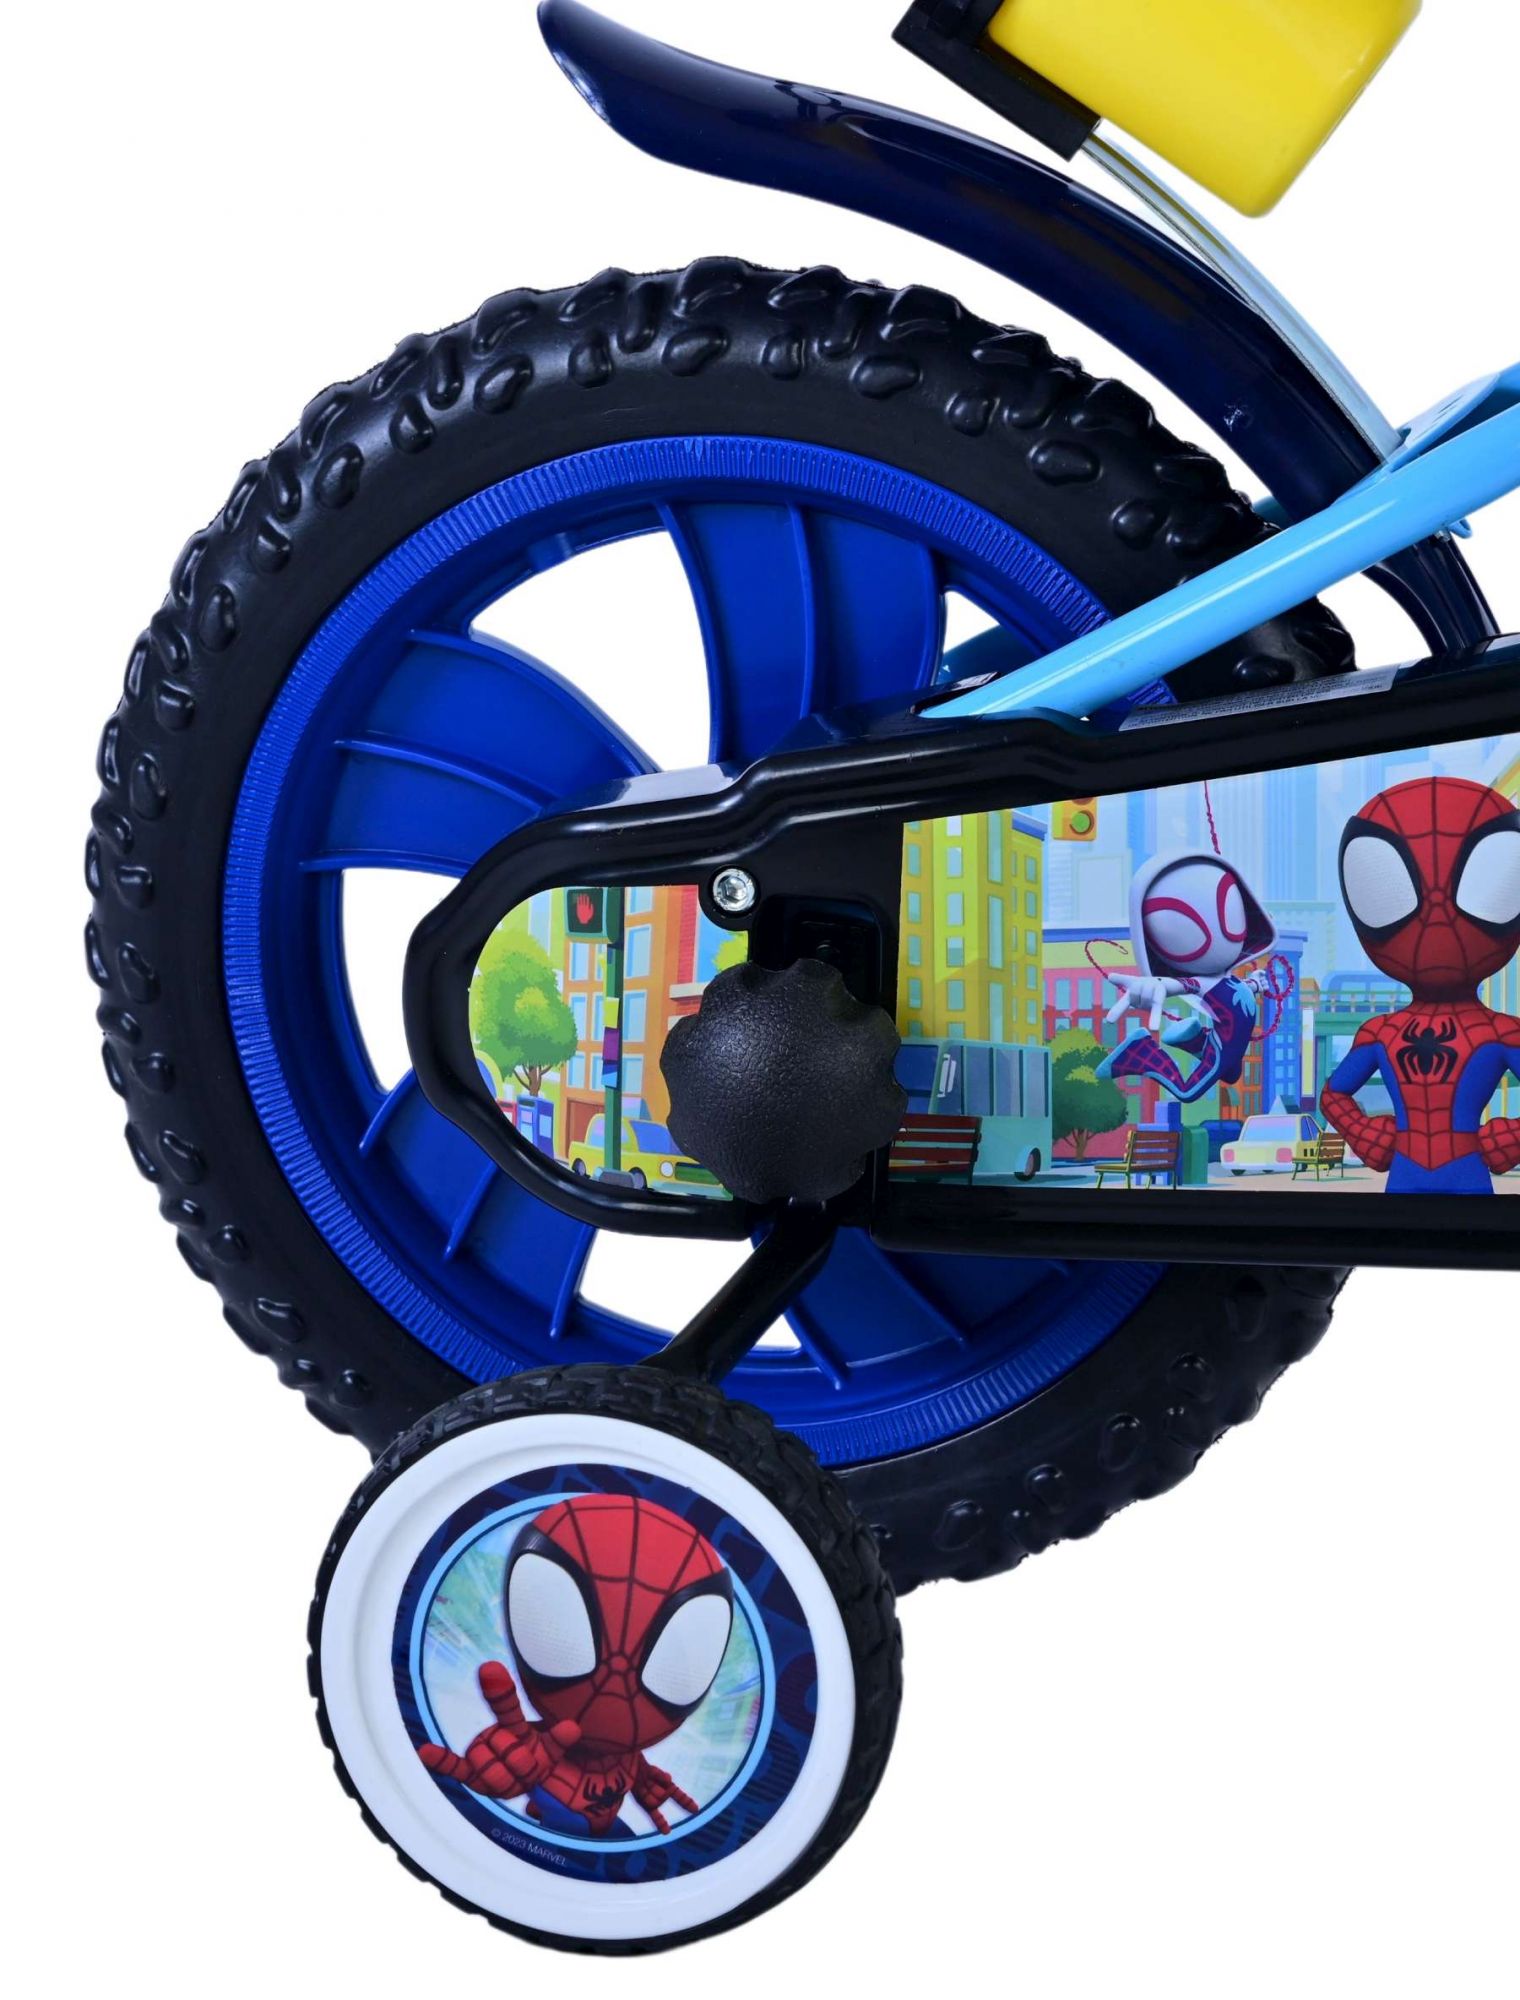 Kinderfahrrad Spidey für Jungen 12 Zoll Kinderrad in Blau Fahrrad